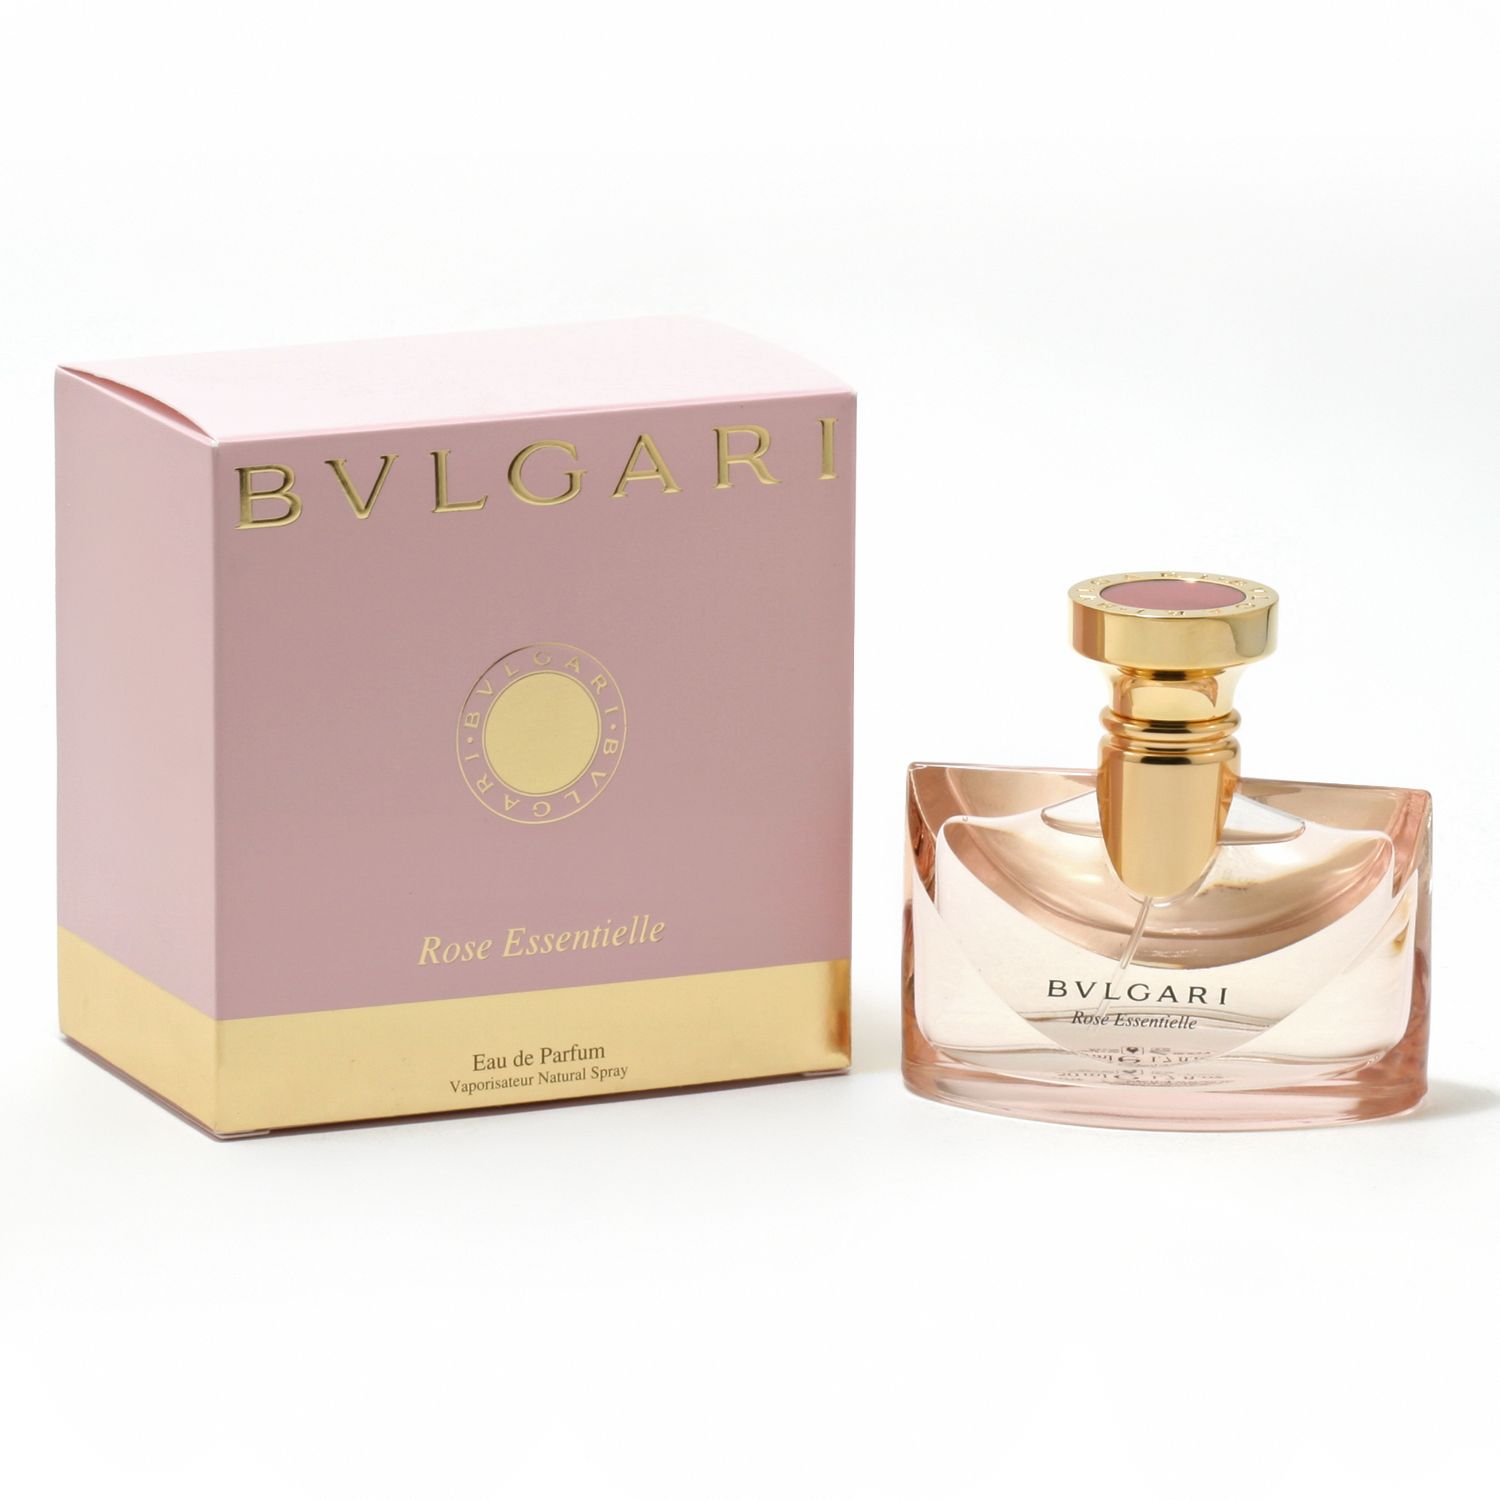 review parfum bvlgari rose essentielle